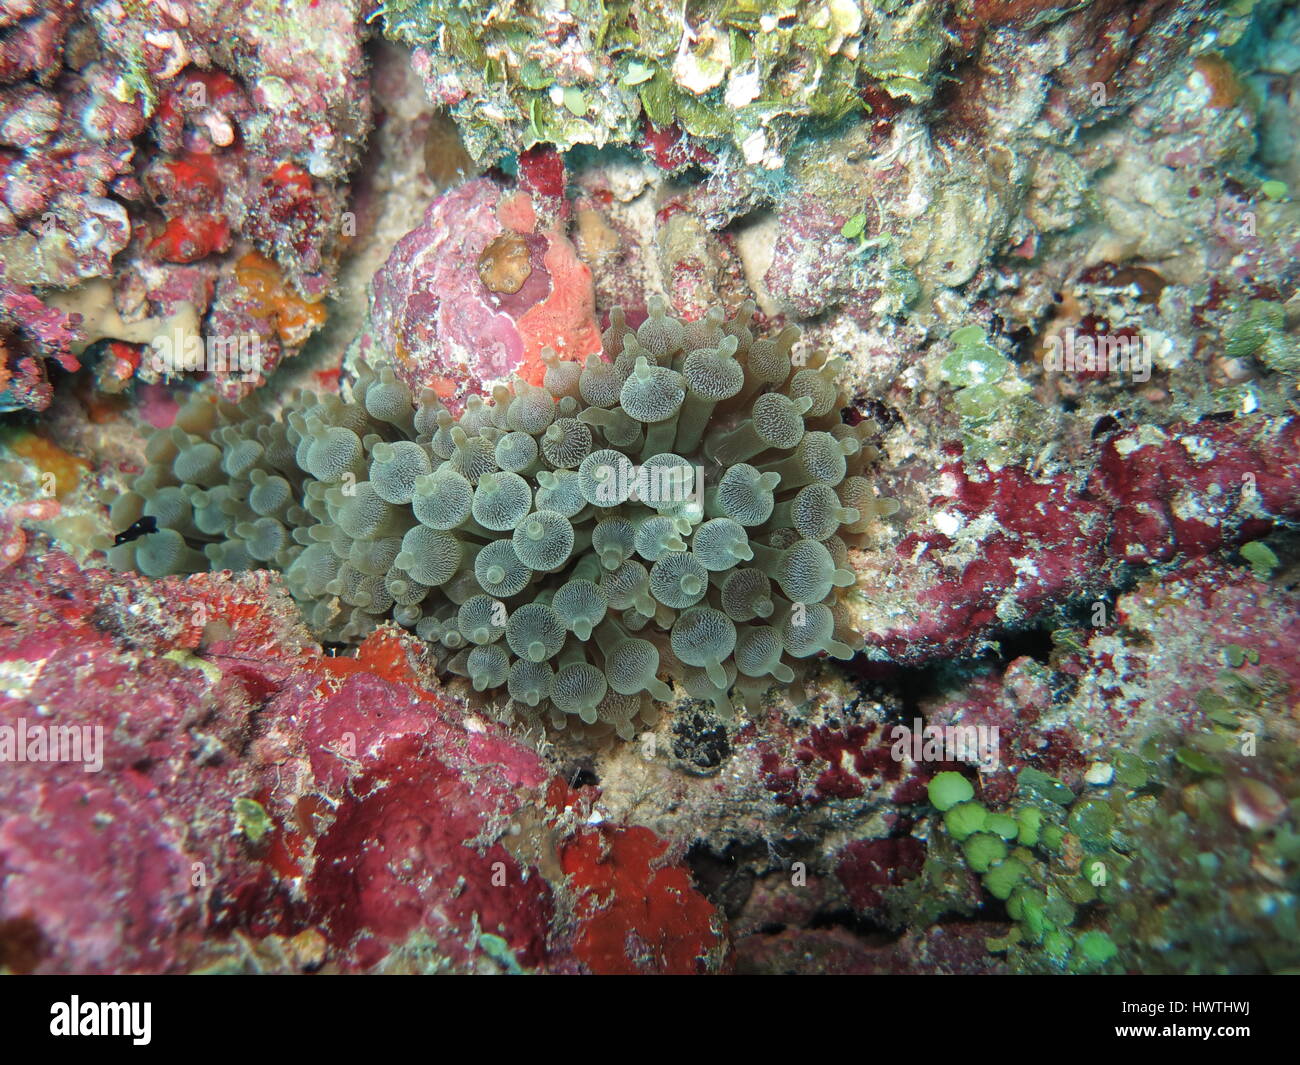 Bulle-tip ( anémone Entacmaea quadricolor ) sur les récifs coralliens Banque D'Images